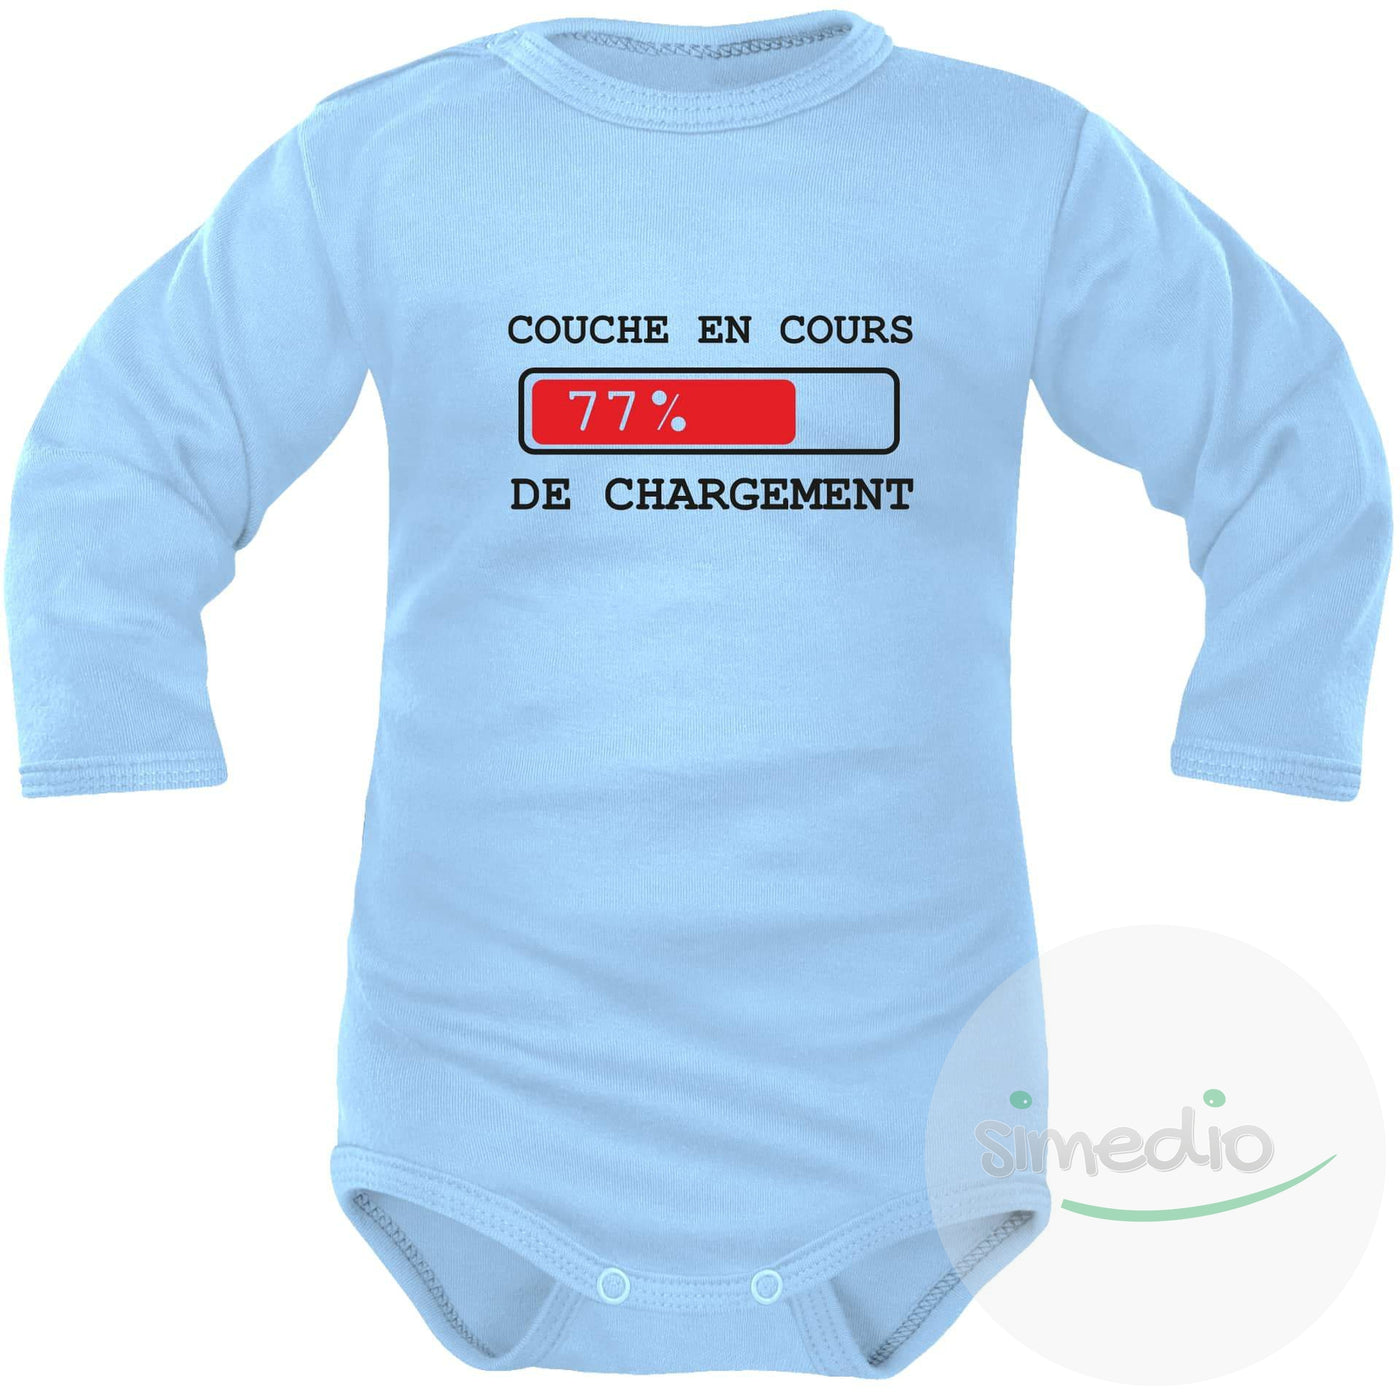 Body bébé rigolo : COUCHE en cours de CHARGEMENT, Bleu, Longues, 0-1 mois - SiMEDIO